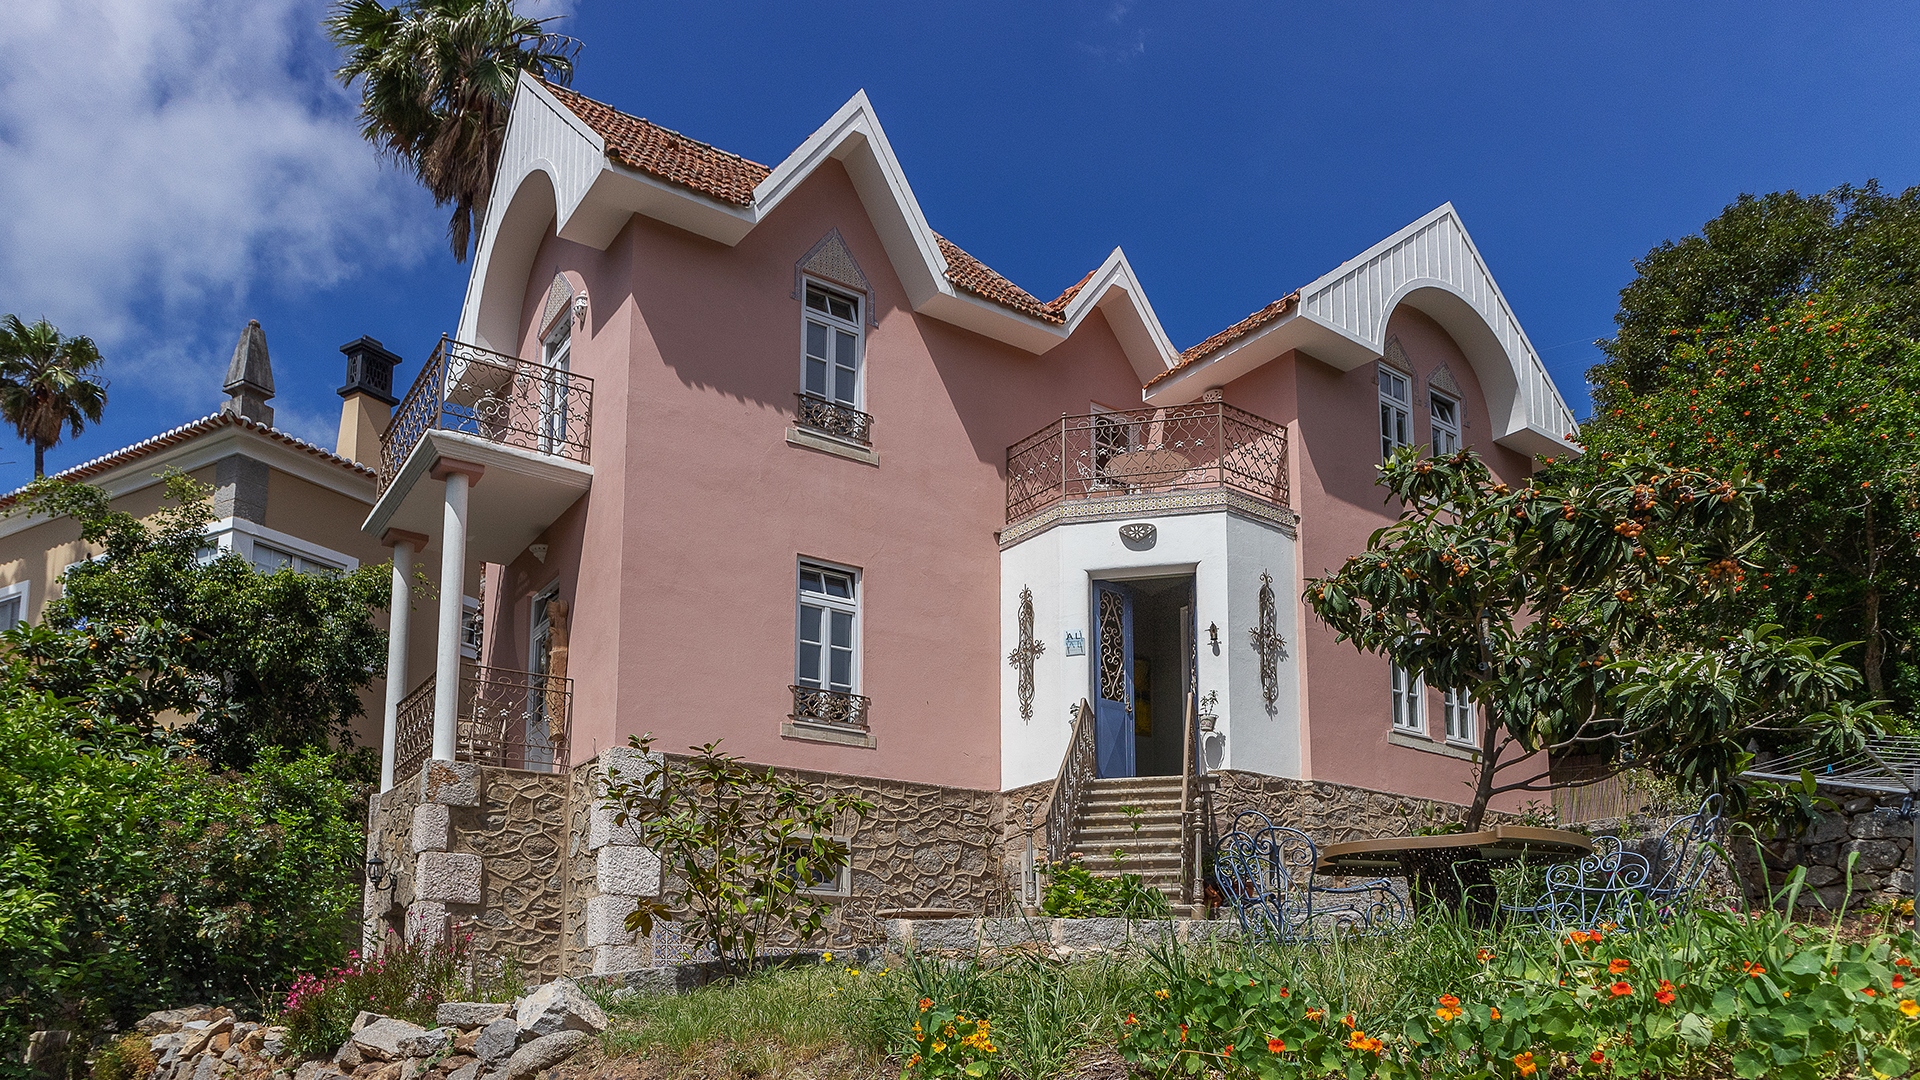 Romântica, única casa de 4 quartos na histórica cidade termal de Caldas de Monchique | LG1455 